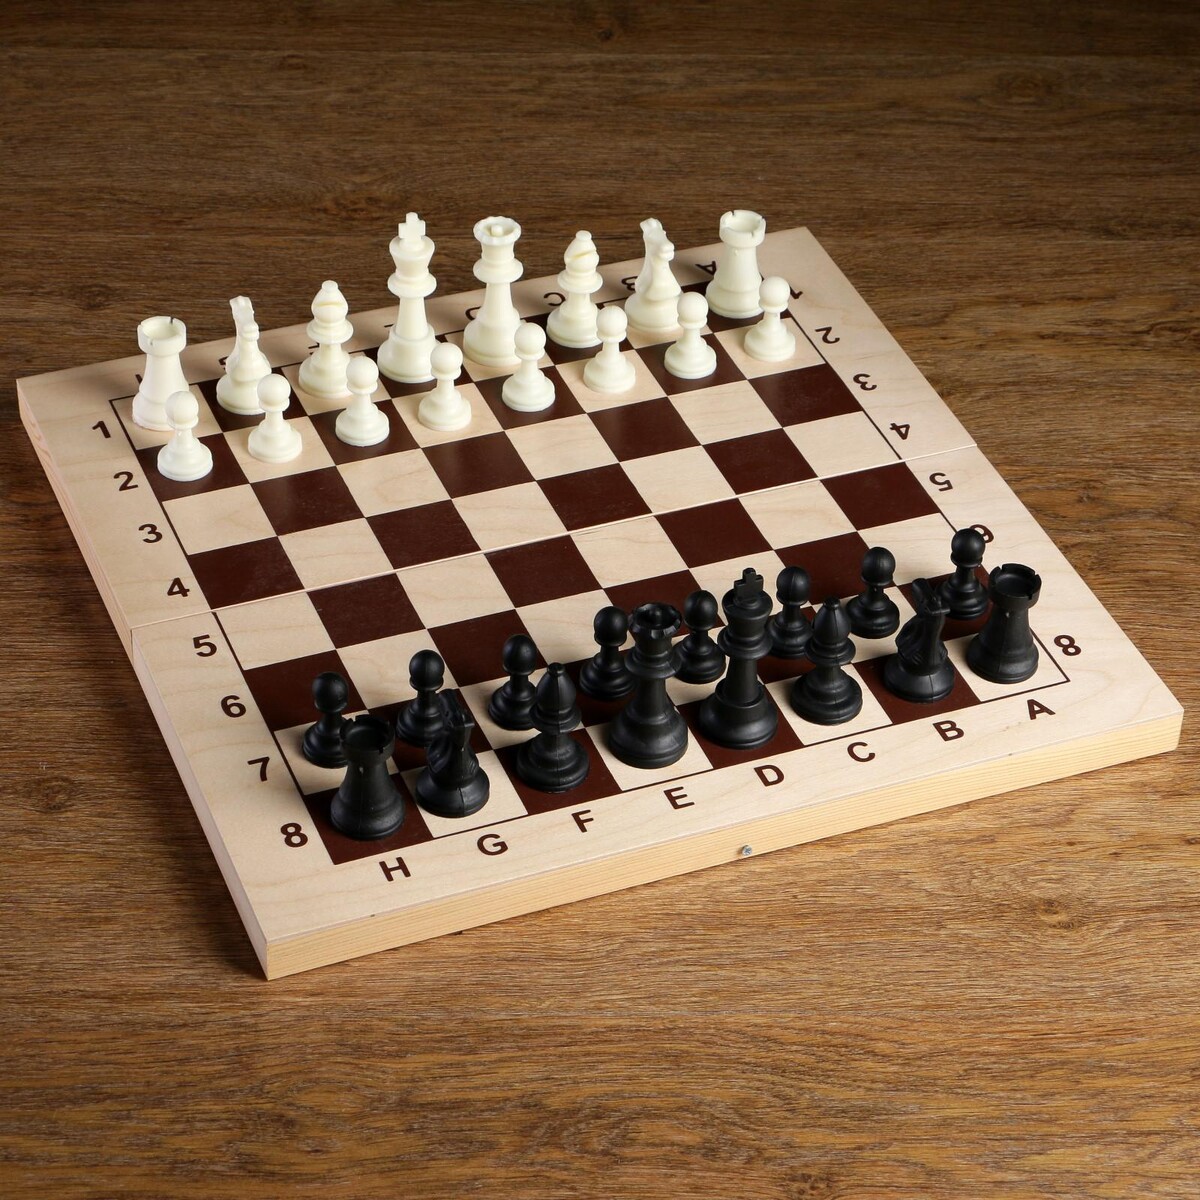 Шахматные фигуры, пластик, король h-9 см, пешка h-4.1 см голый король